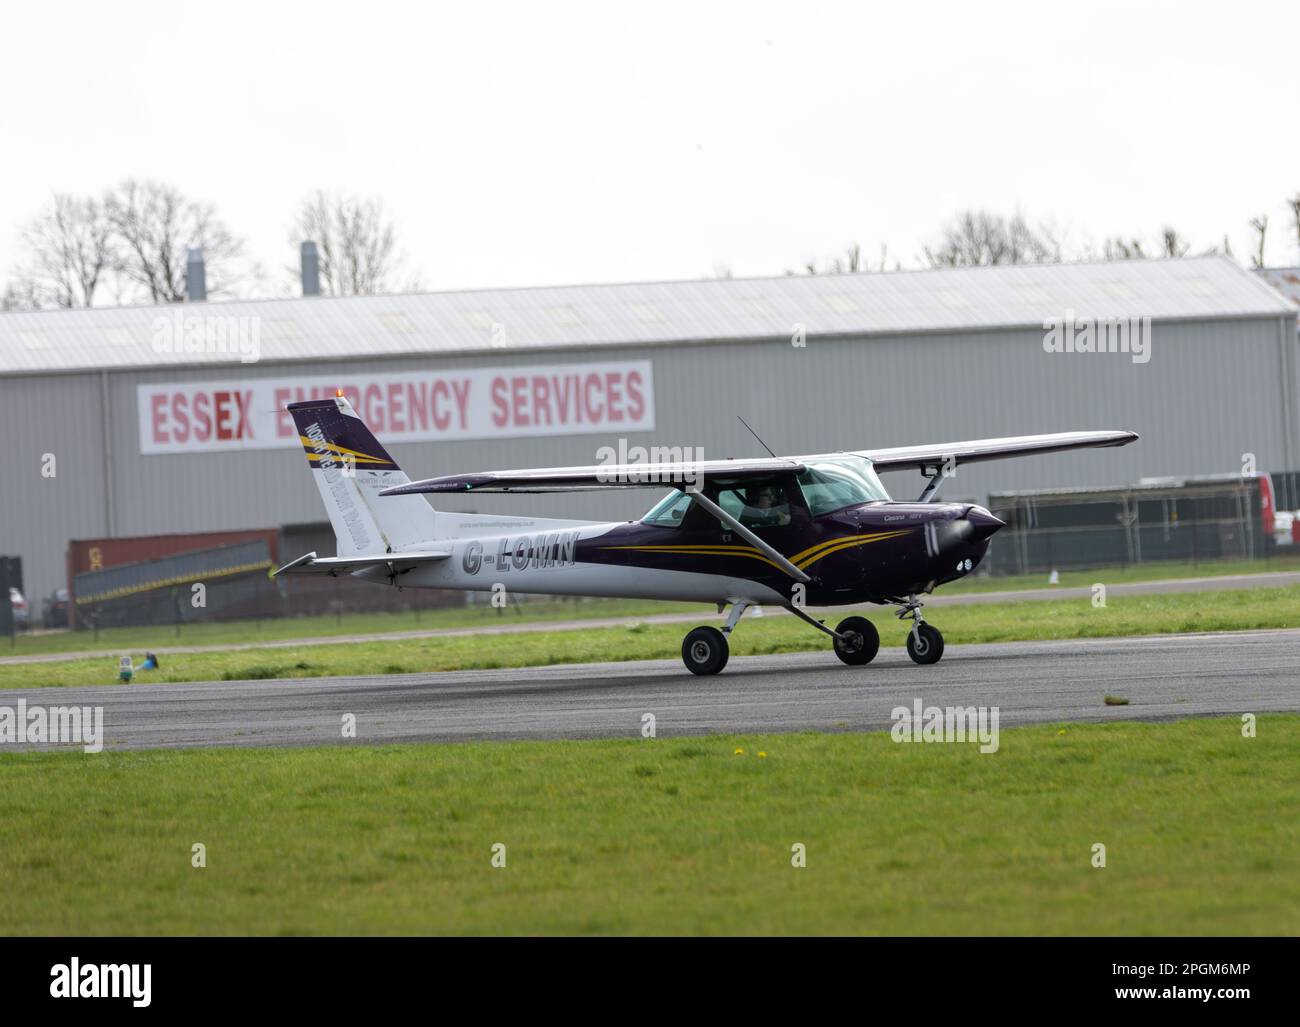 North Weald aérodrome d'aviation générale Essex Cessna 152, G-lomn, Banque D'Images